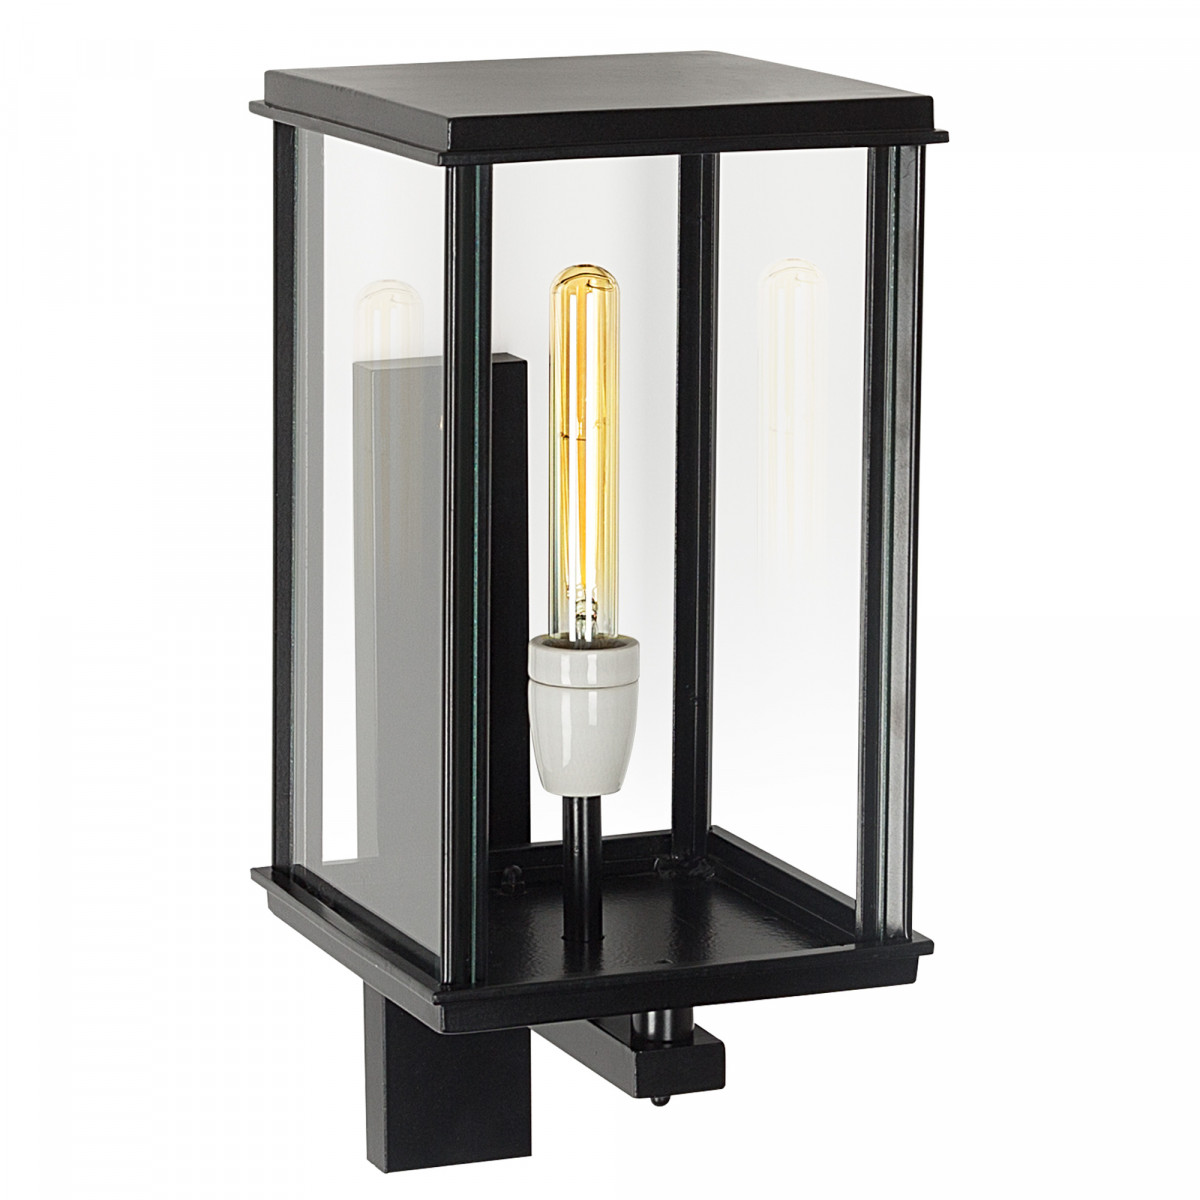 Buiten wandverlichting klassieke buitenlamp stijlvol en strak vormgegeven Capital staand XL wandlamp zwart strak klassieke gevelverlichting van KS Verlichting